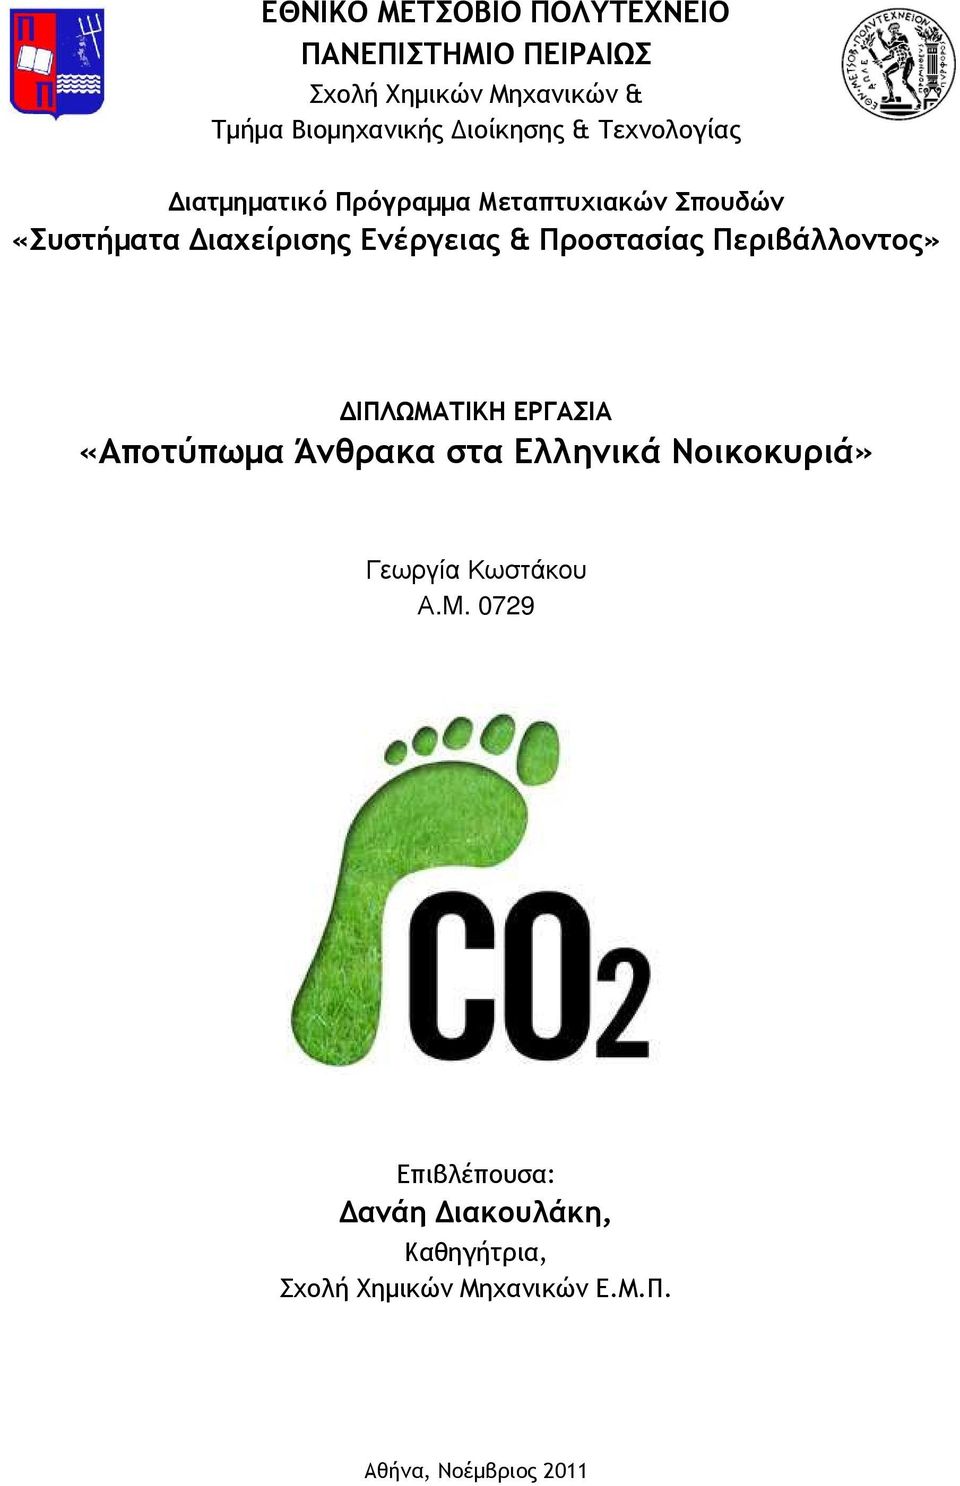 Προστασίας Περιβάλλοντος» ΙΠΛΩΜΑΤΙΚΗ ΕΡΓΑΣΙΑ «Αποτύπωµα Άνθρακα στα Ελληνικά Νοικοκυριά» Γεωργία